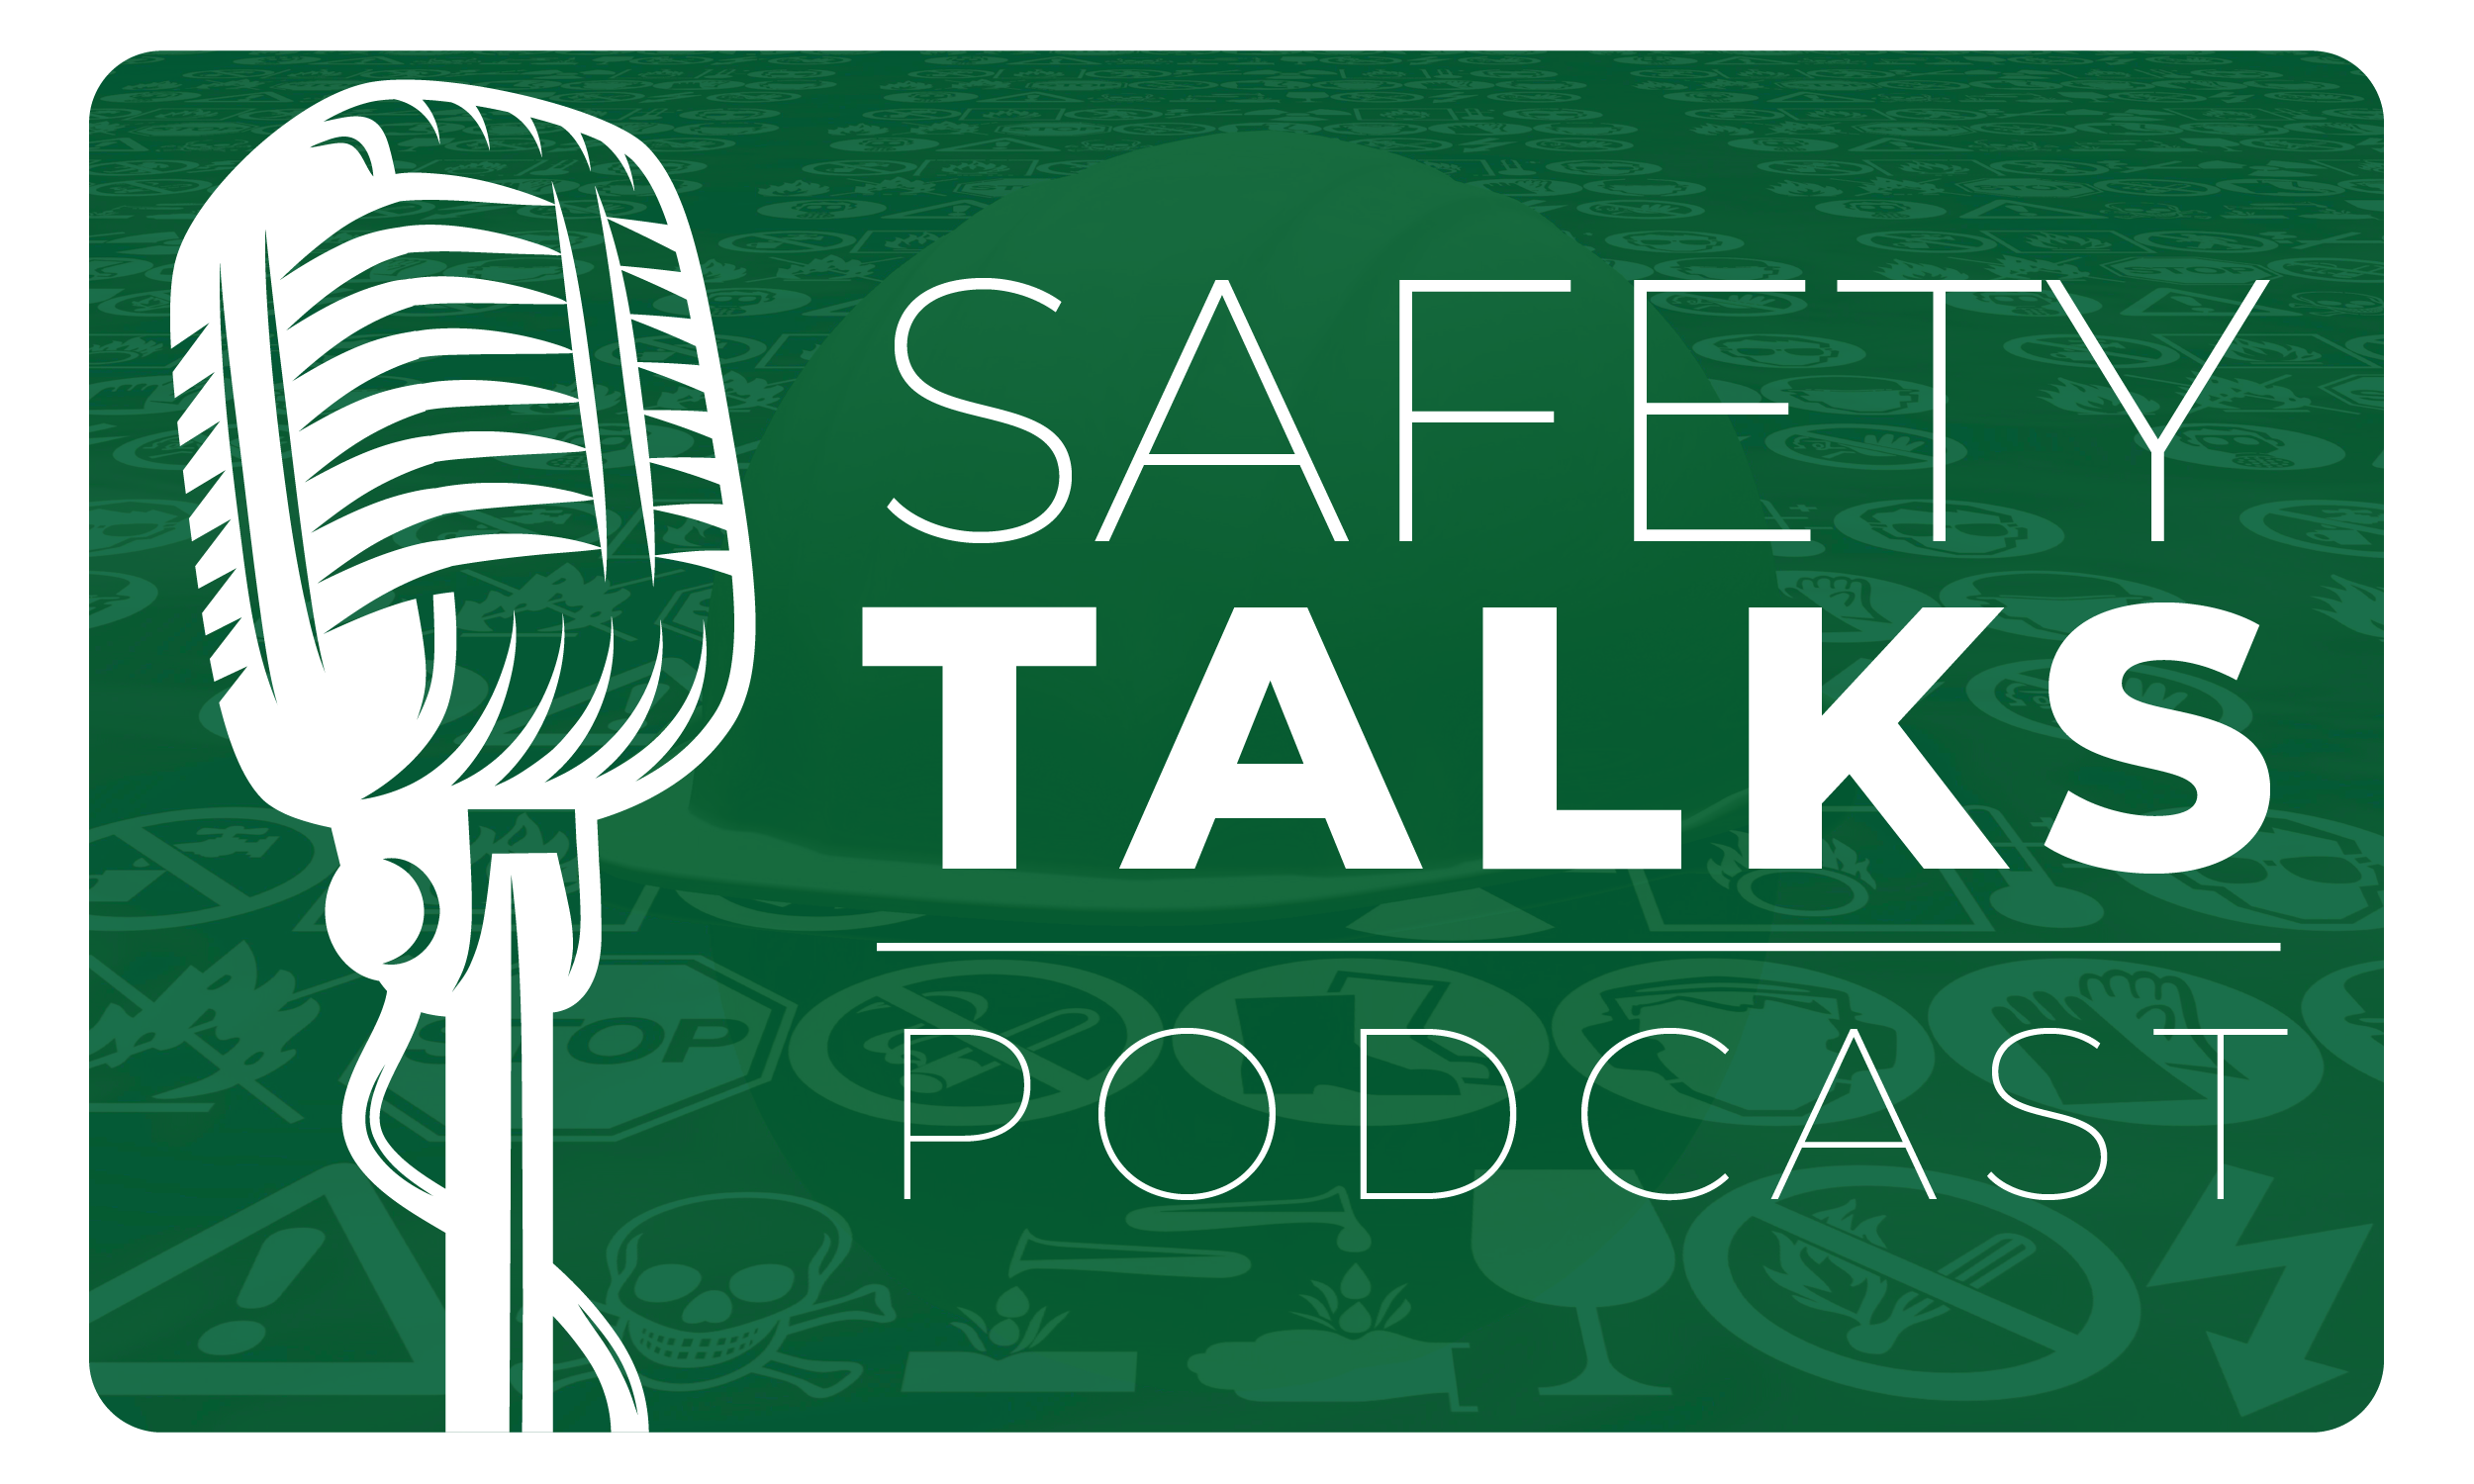 Safety Talks Podcast